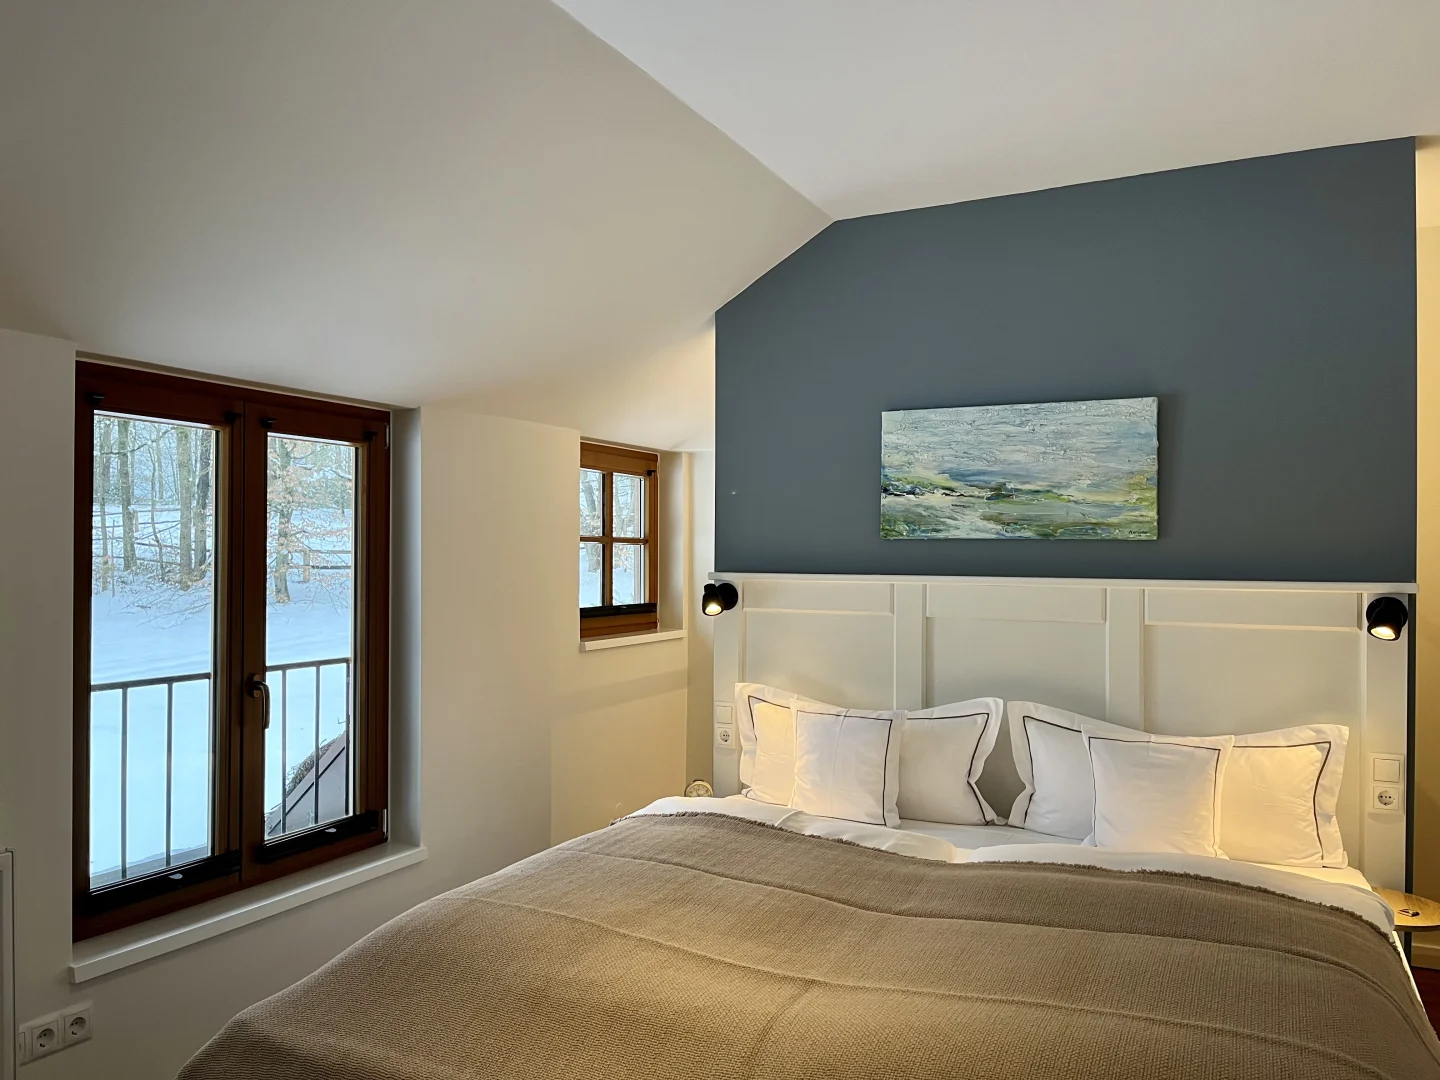 Bild Landhaus Suite Schlafzimmer mit Blick aus Fenster